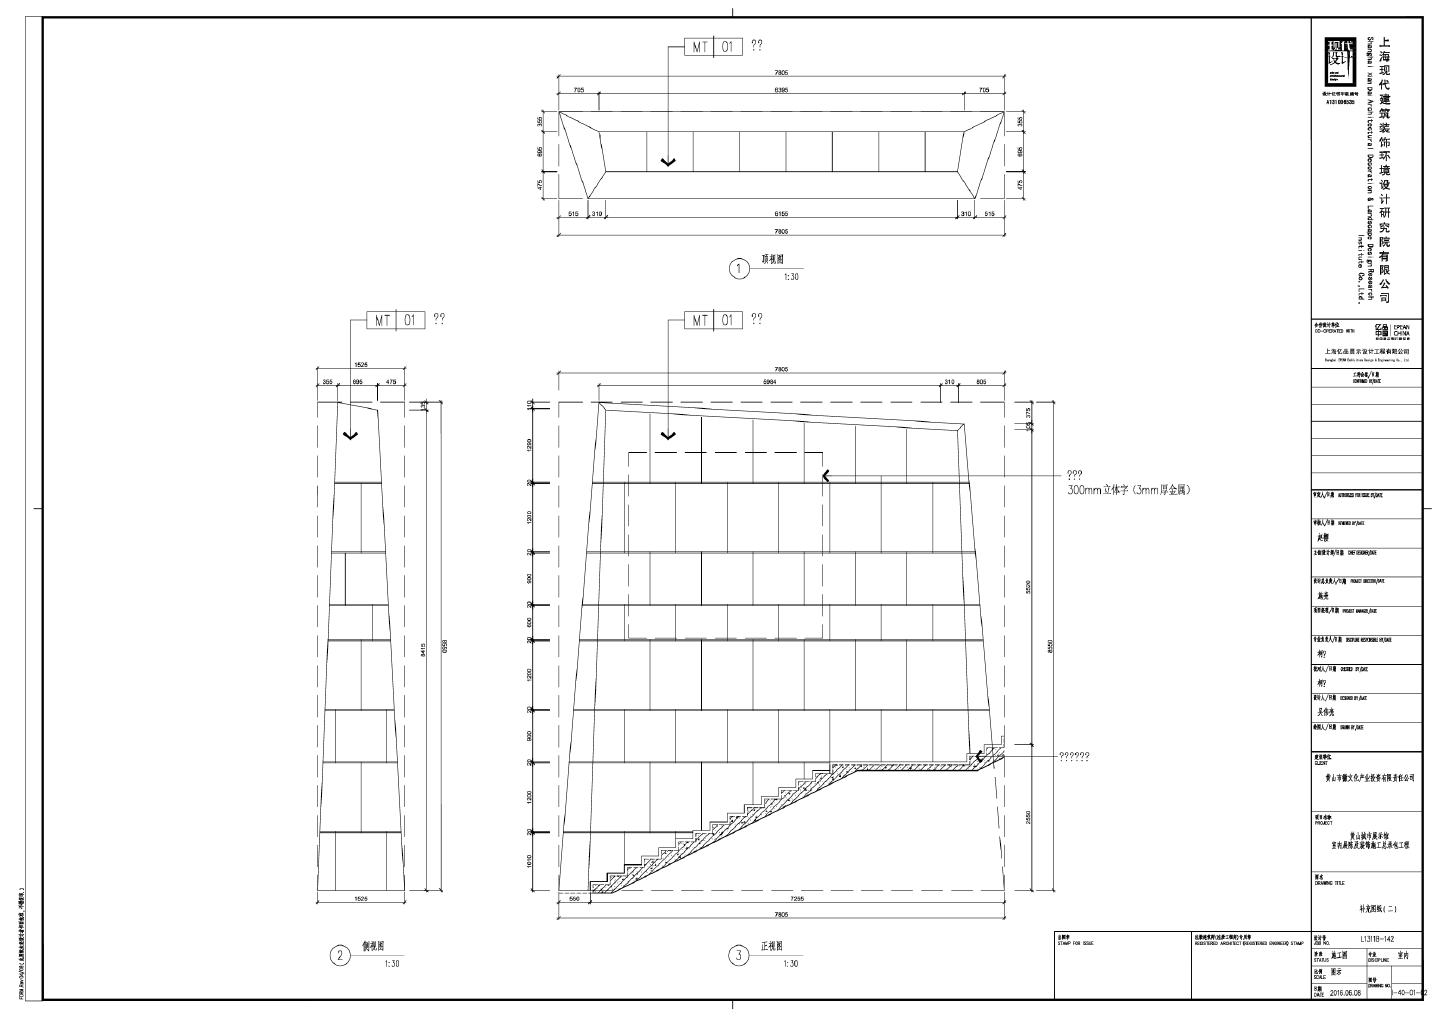 黄山城市展示馆室内展陈及装饰施工总承包工程-补充图纸（二）CAD图 .dwg